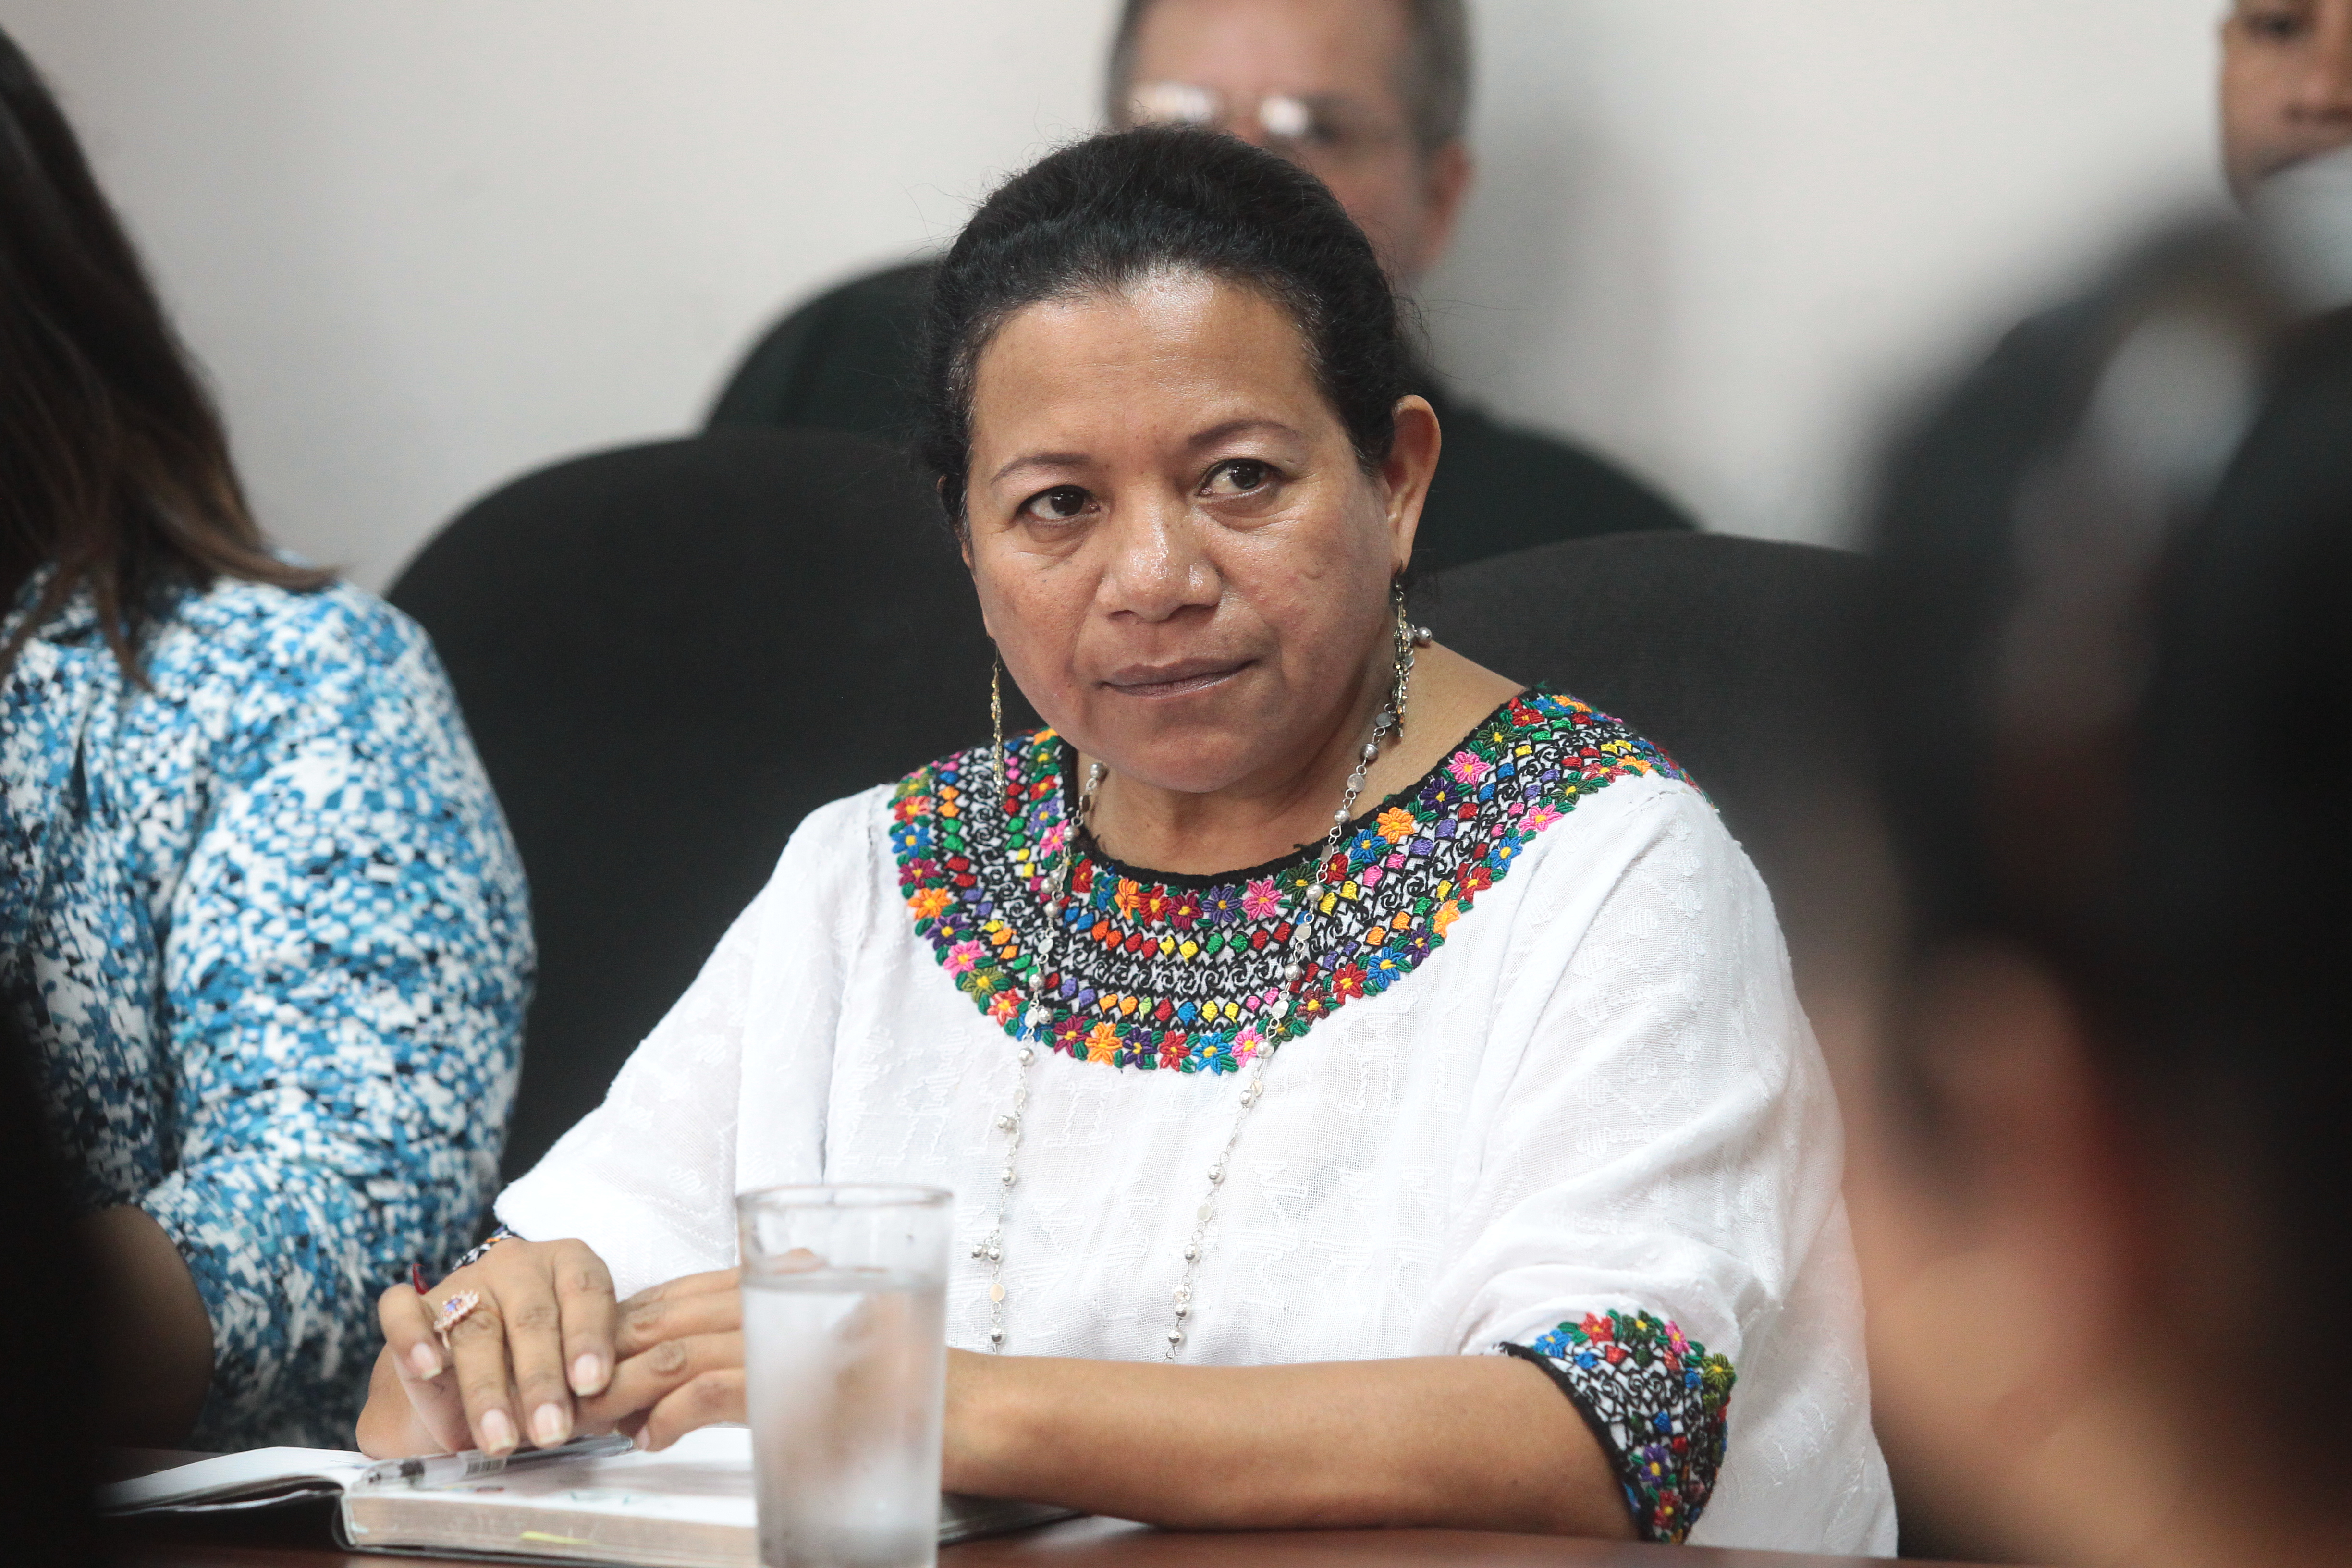 La exgobernadora de Alta Verapaz, Estela Ventura, fue sentenciada a una pena de 5 años después de estar en el cargo por corto tiempo. (Foto Prensa Libre: Álvaro Interiano)